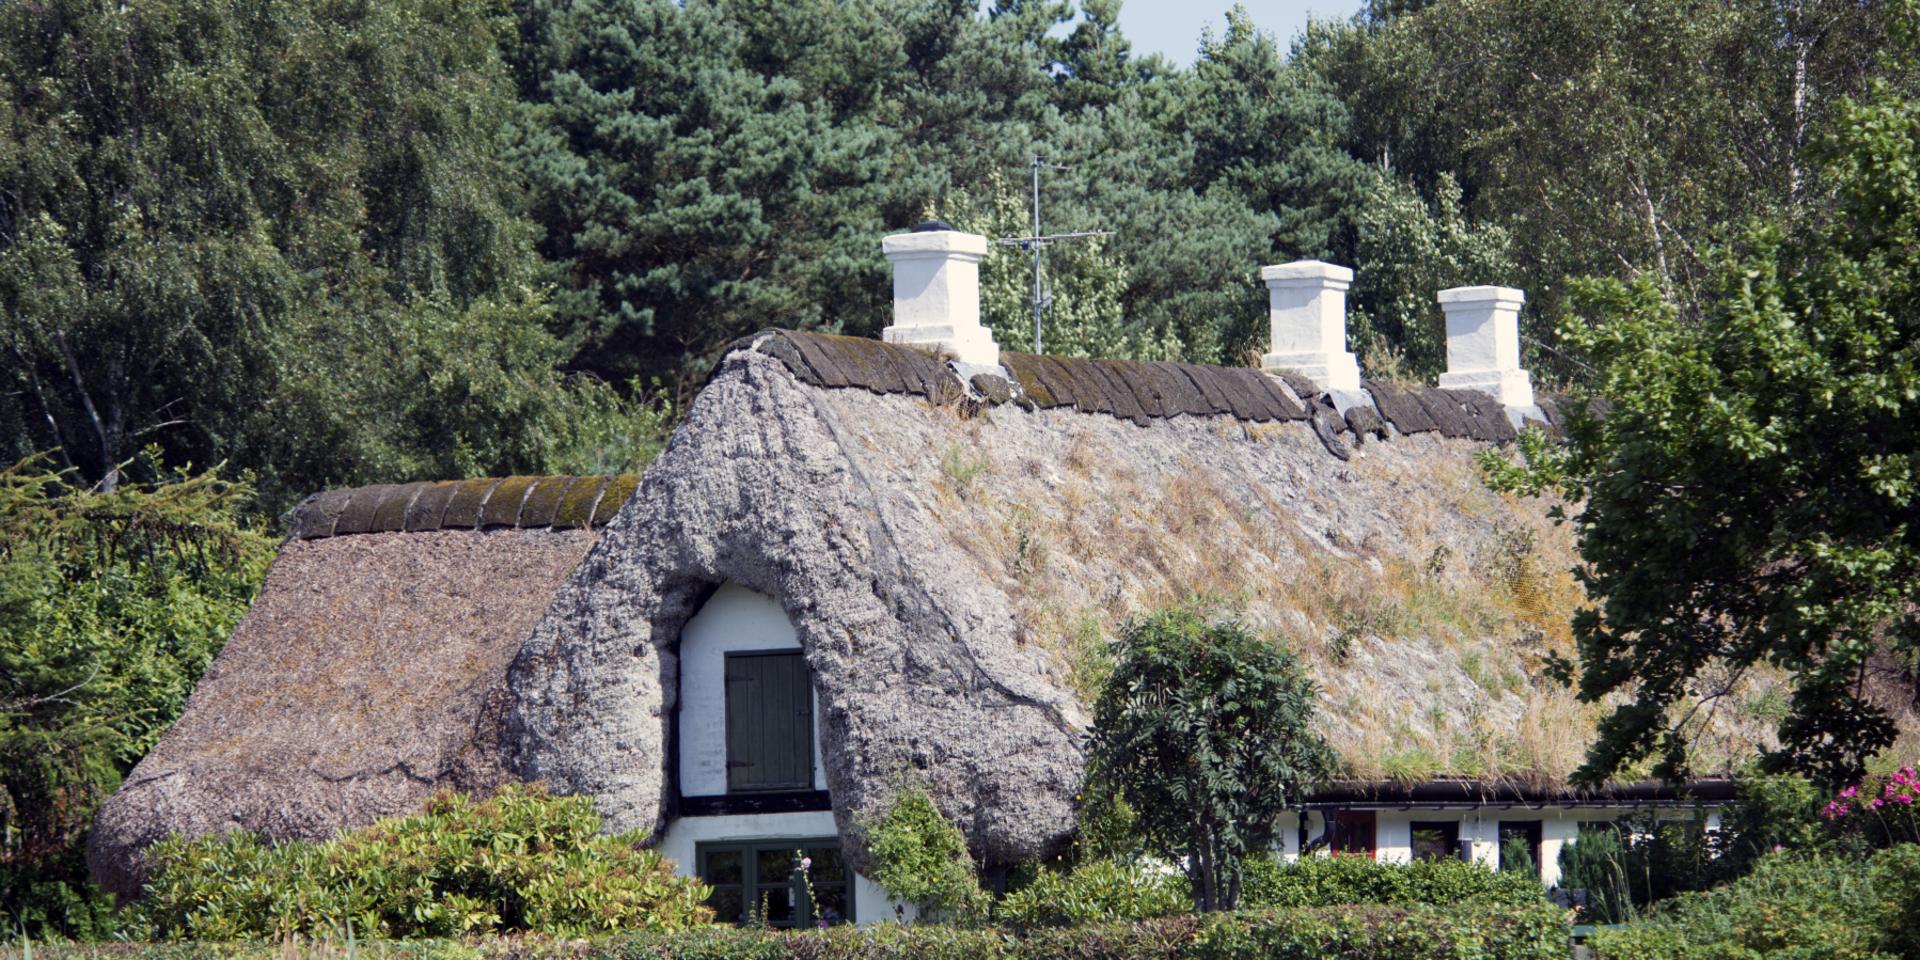 Hus med tak av sjögräs på Läsö. 